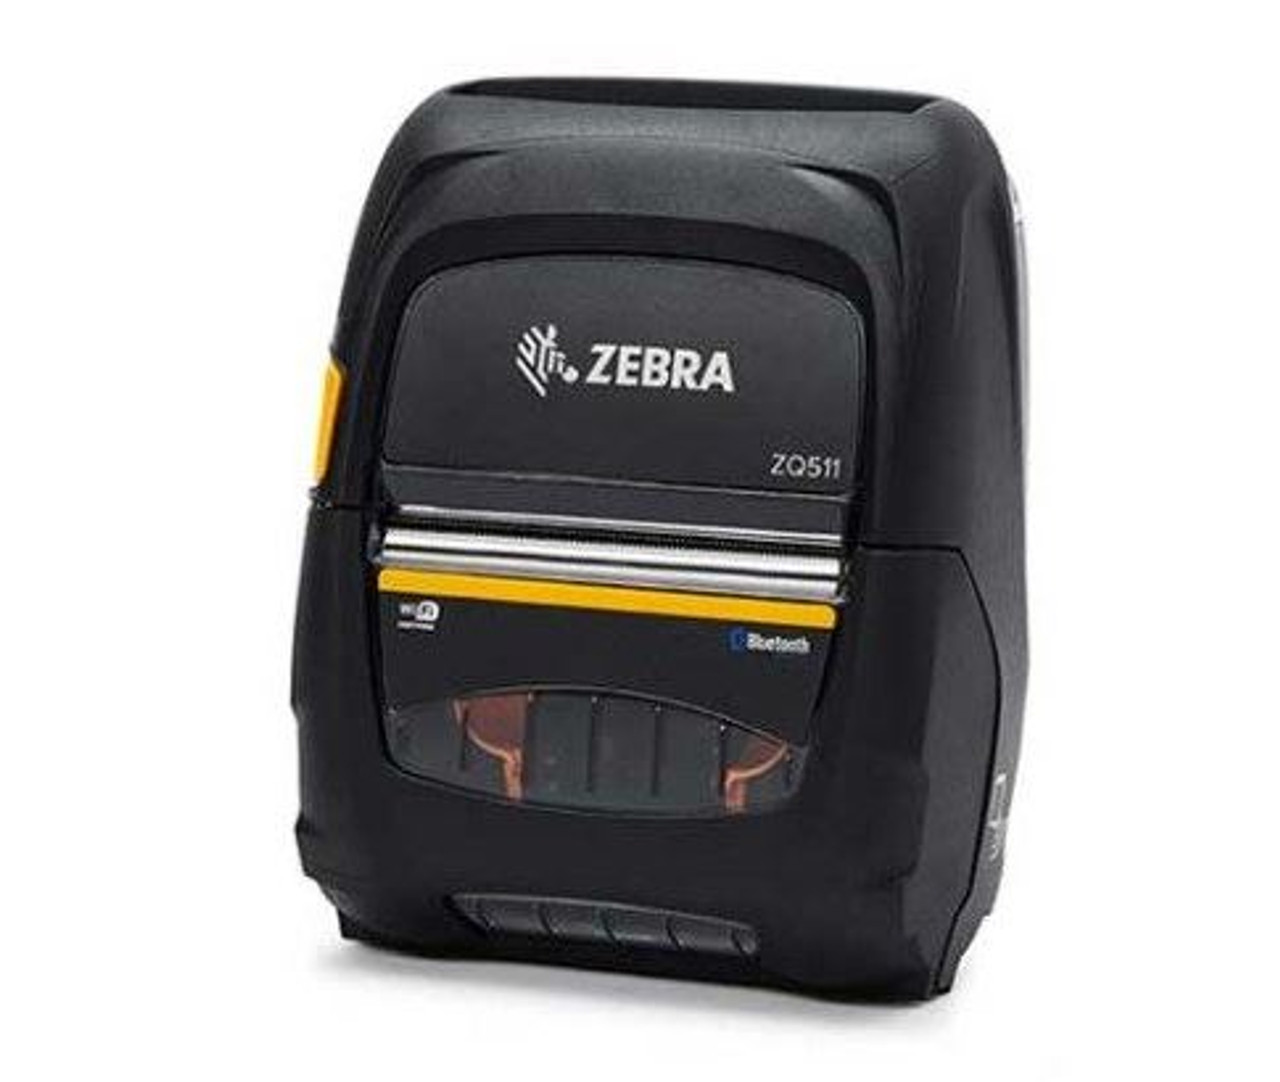 Løve om Oprigtighed Zebra ZQ511 Direct Thermal Mobile Printer